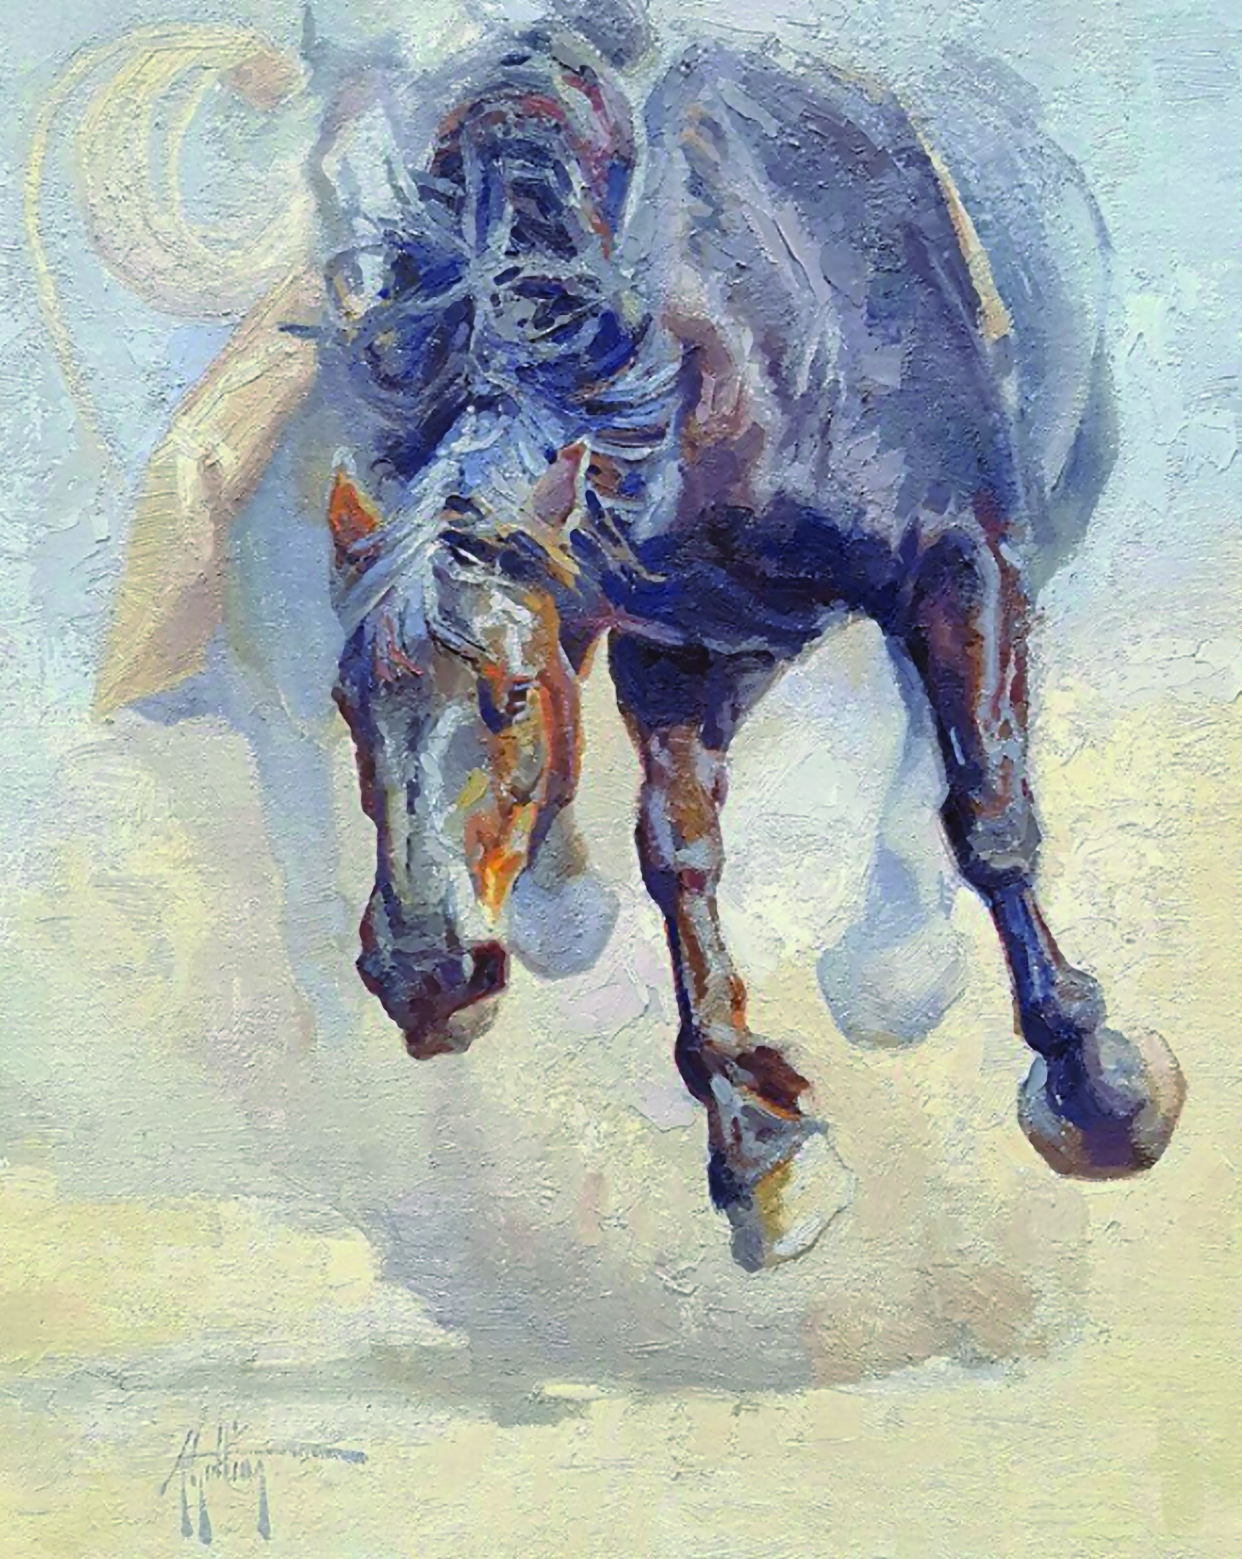 Abigail Gutting (b. 1990), "The Beast," 2020, oil on linen, 20 x 16 in., McLarry Fine Art, Santa Fe